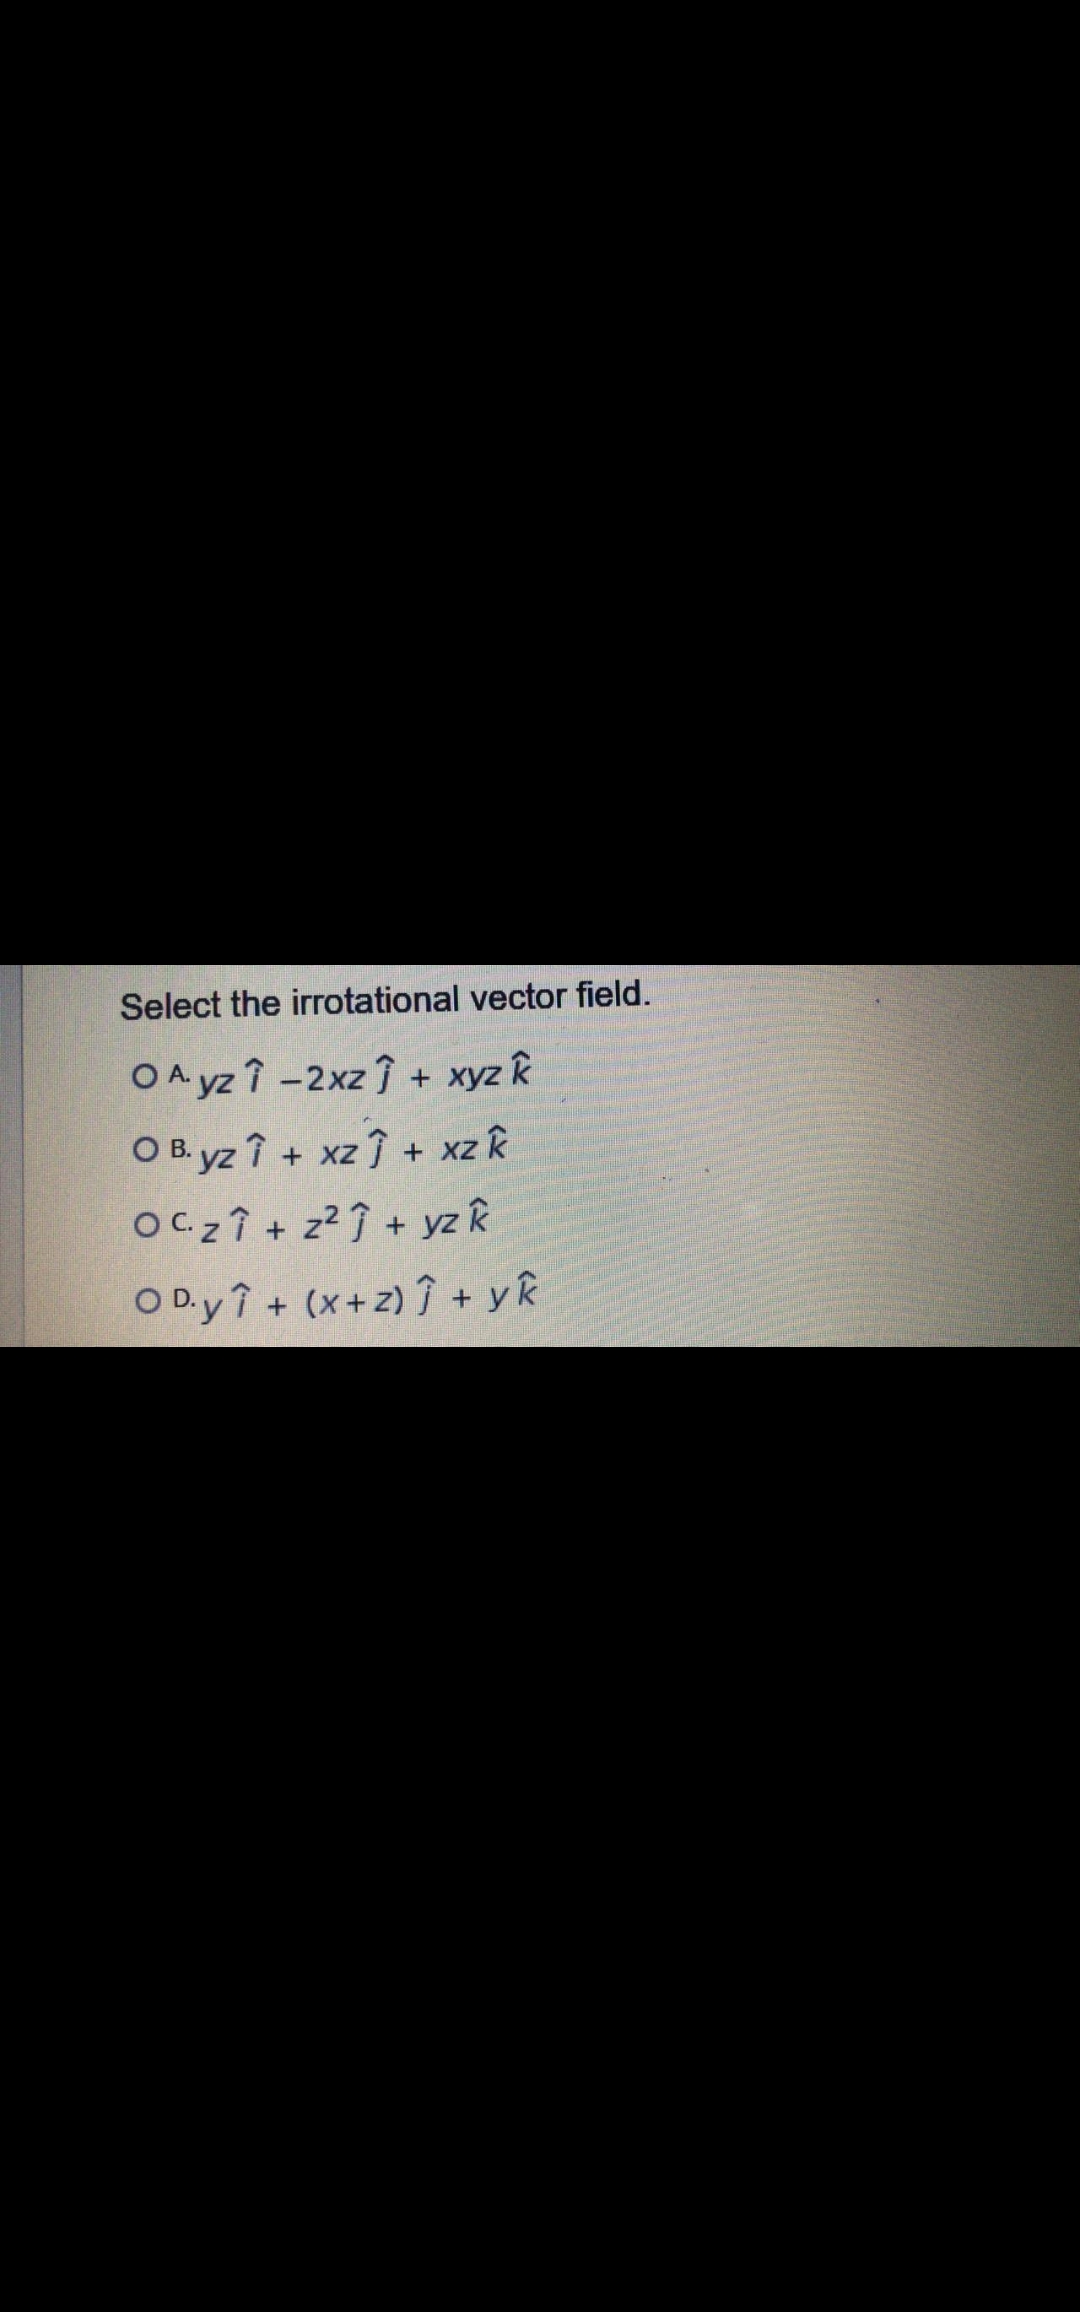 Select the irrotational vector field.
OA yz î -2xz + xyz k
O B. yz î + xz + xz k
OC 2 Î + z² Î + yz k
O D.y î + (x+z) î + yR
